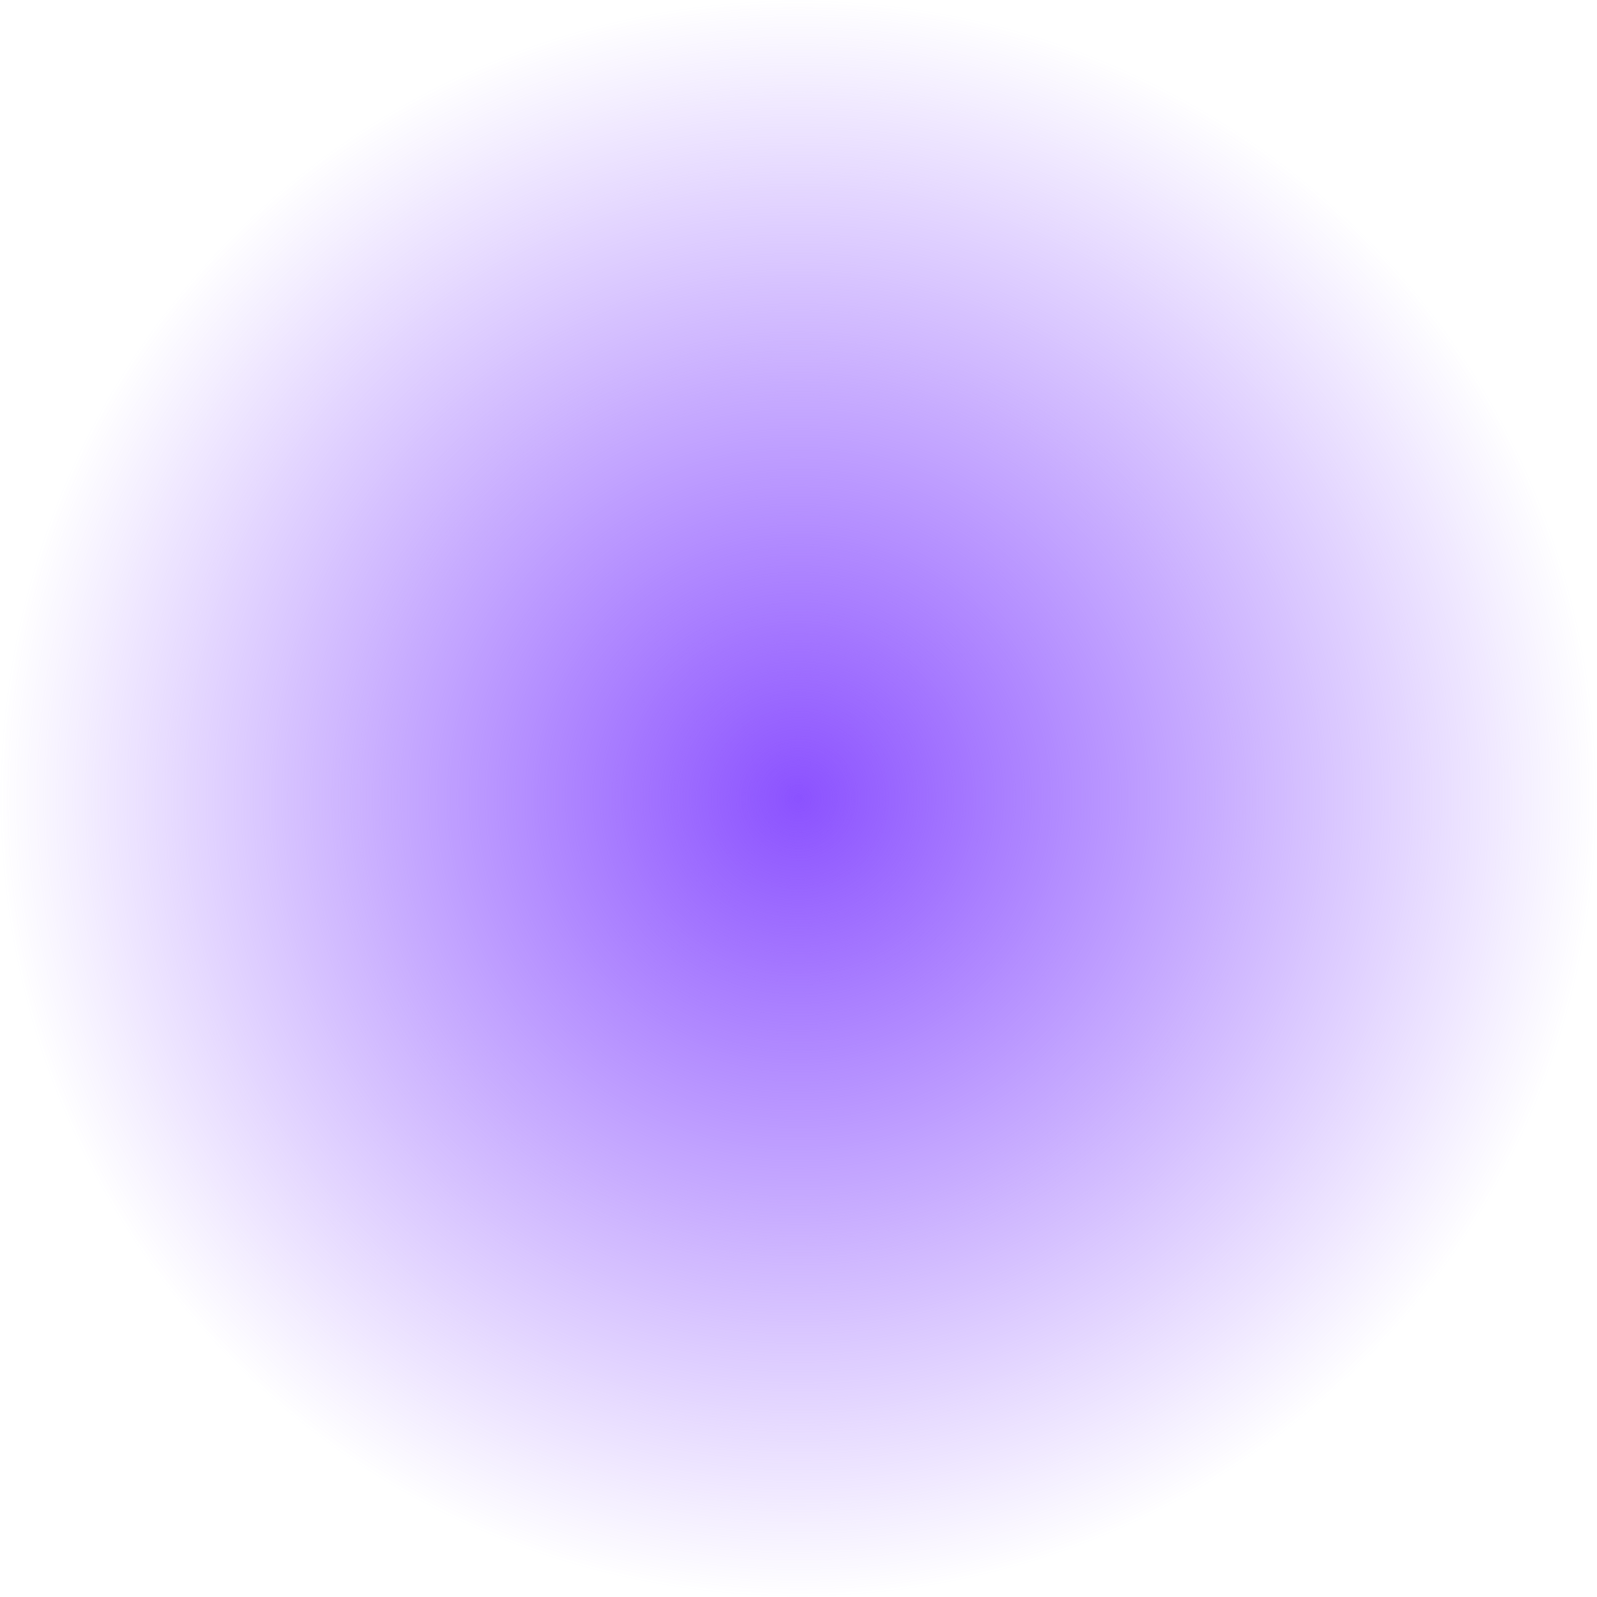 Lilac blur circle. Neon round frame. Shining circle banner.